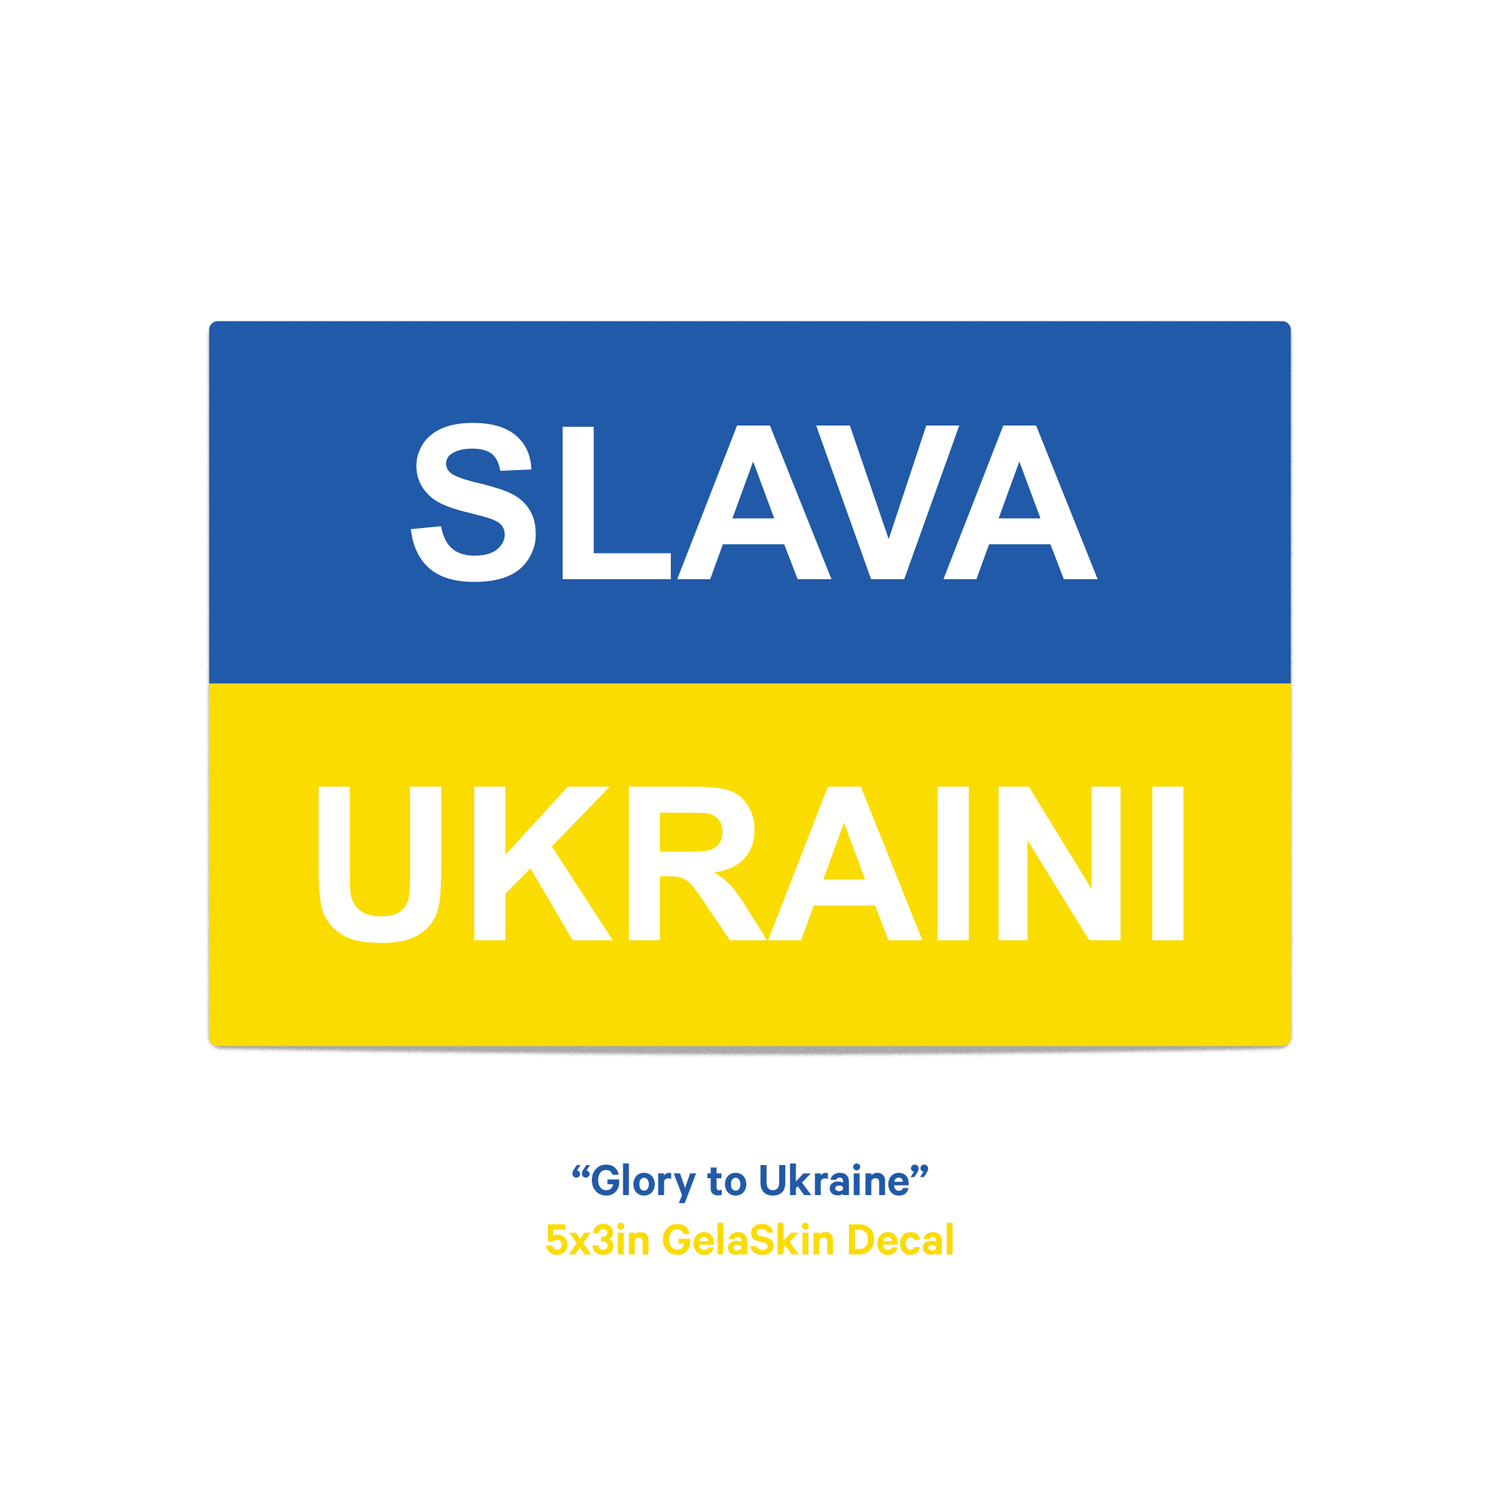 Nova Ukraine